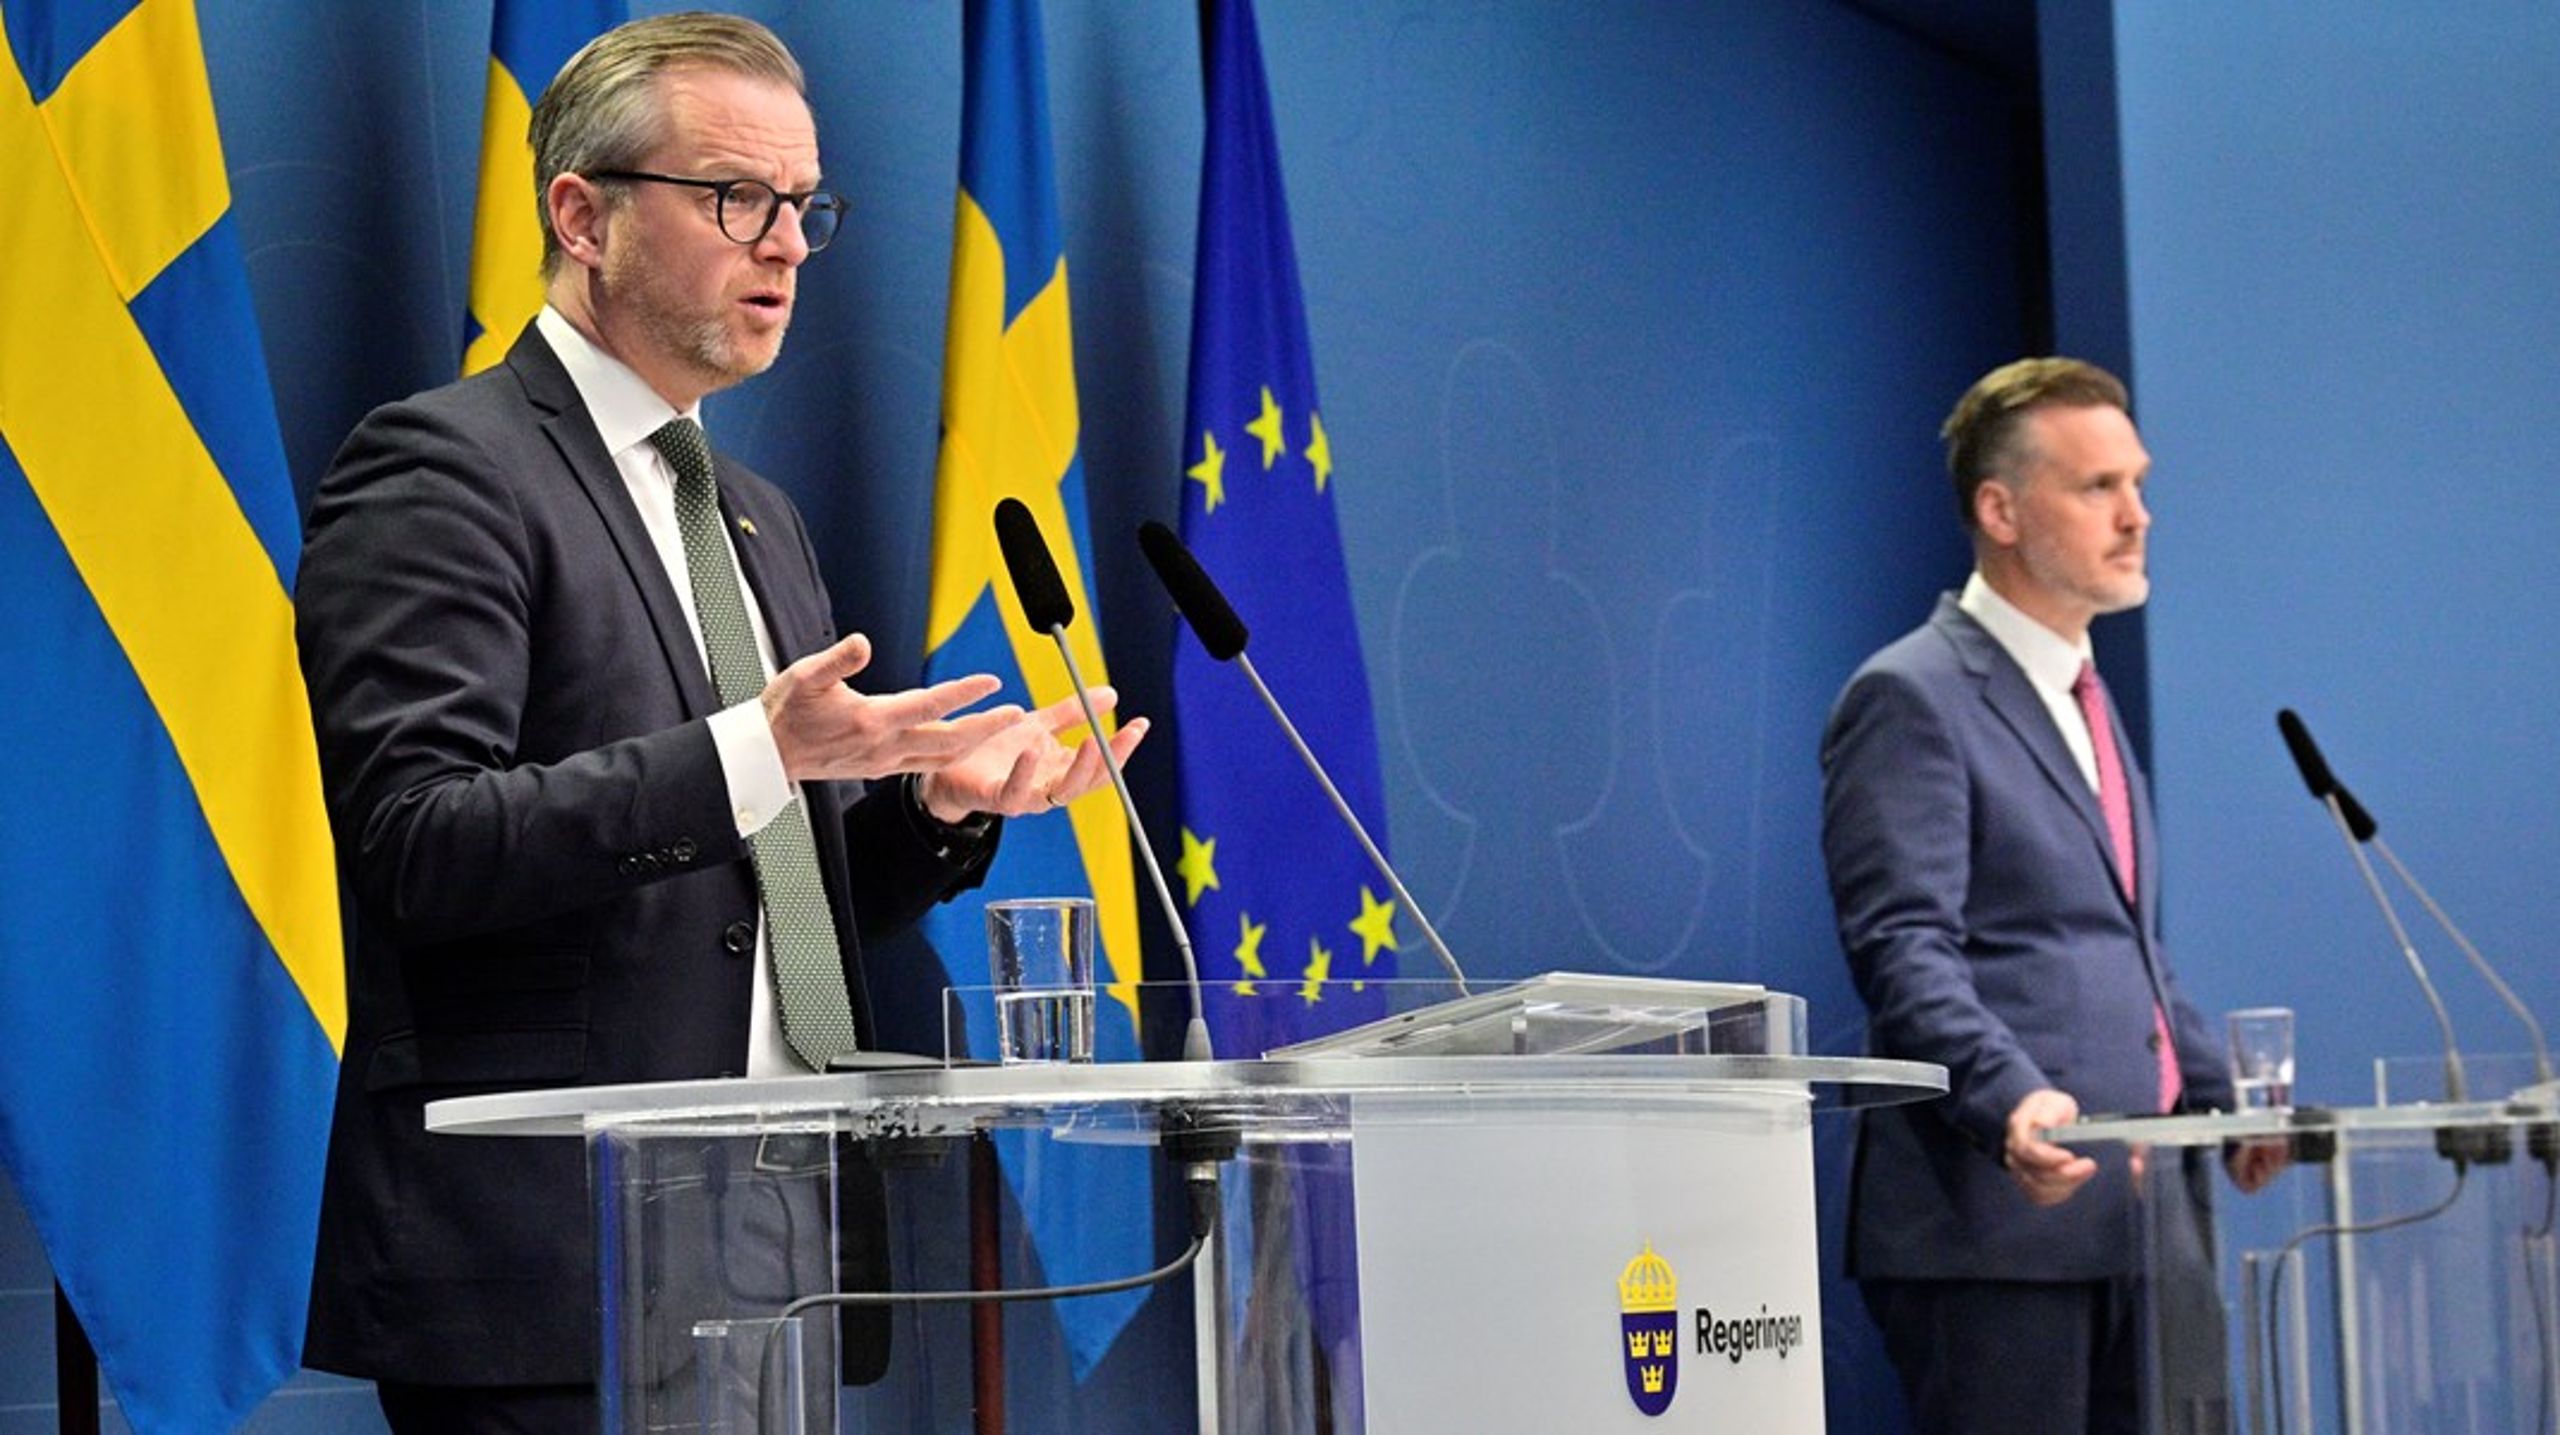 Ministrarna Damberg och Elger är inte oroliga för svensk ekonomi trots att världsekonomin påverkas av sanktionerna mot Ryssland.